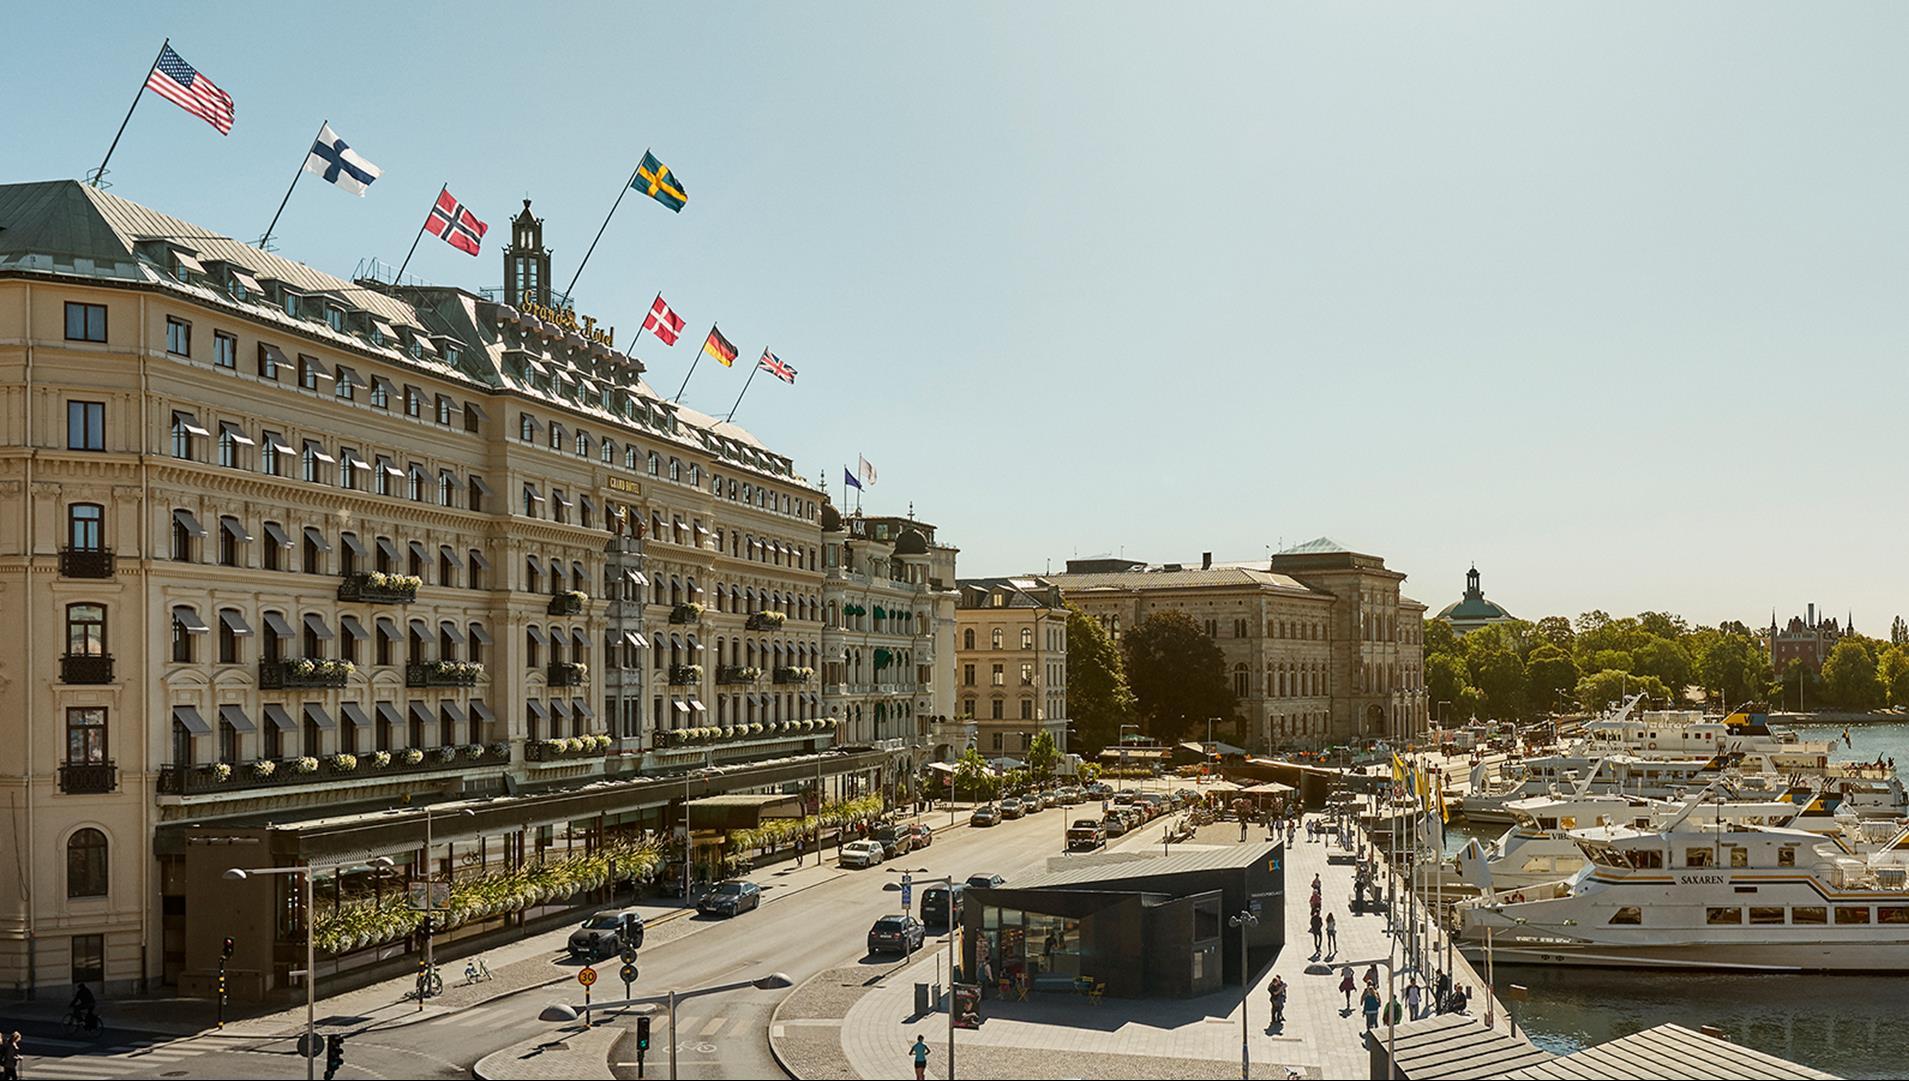 Grand Hotel Stockholm in Stockholm, SE